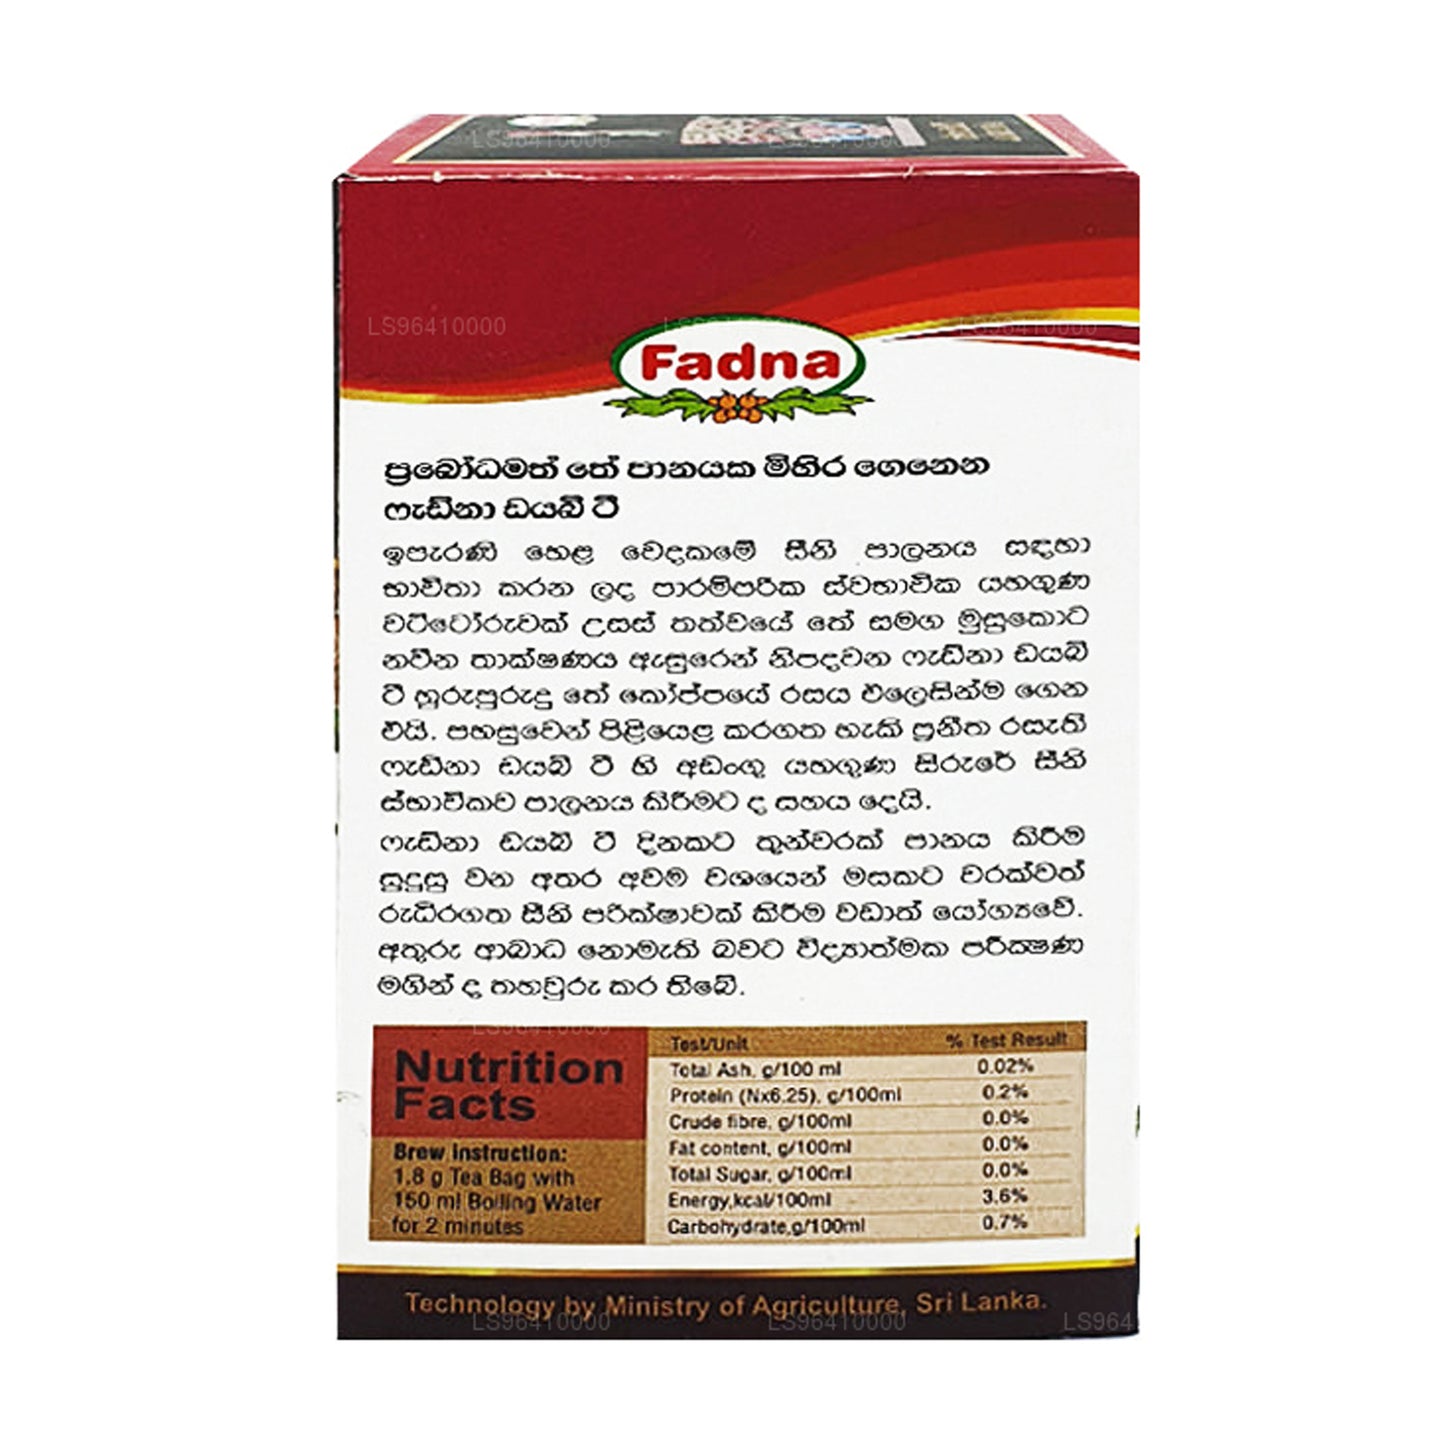 Fadna Diabe Tea (40g) 20 Tea Bags